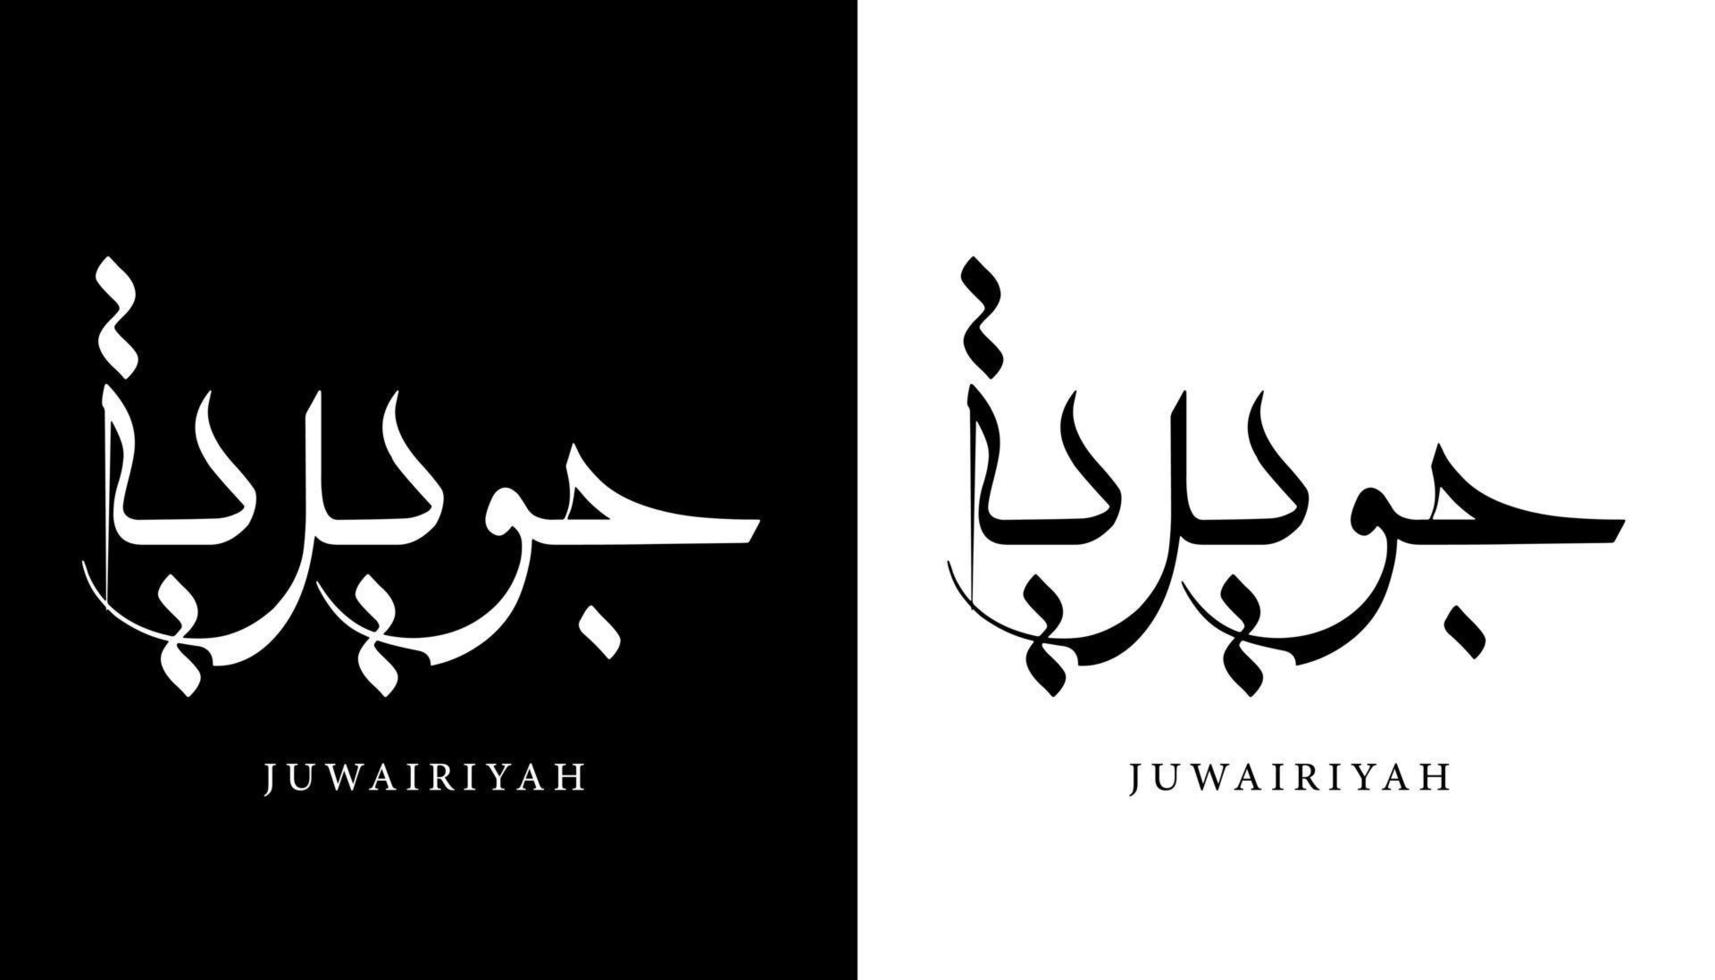 arabisk kalligrafi namn översatt "juwairiyah" arabiska bokstäver alfabetet teckensnitt bokstäver islamisk logotyp vektorillustration vektor